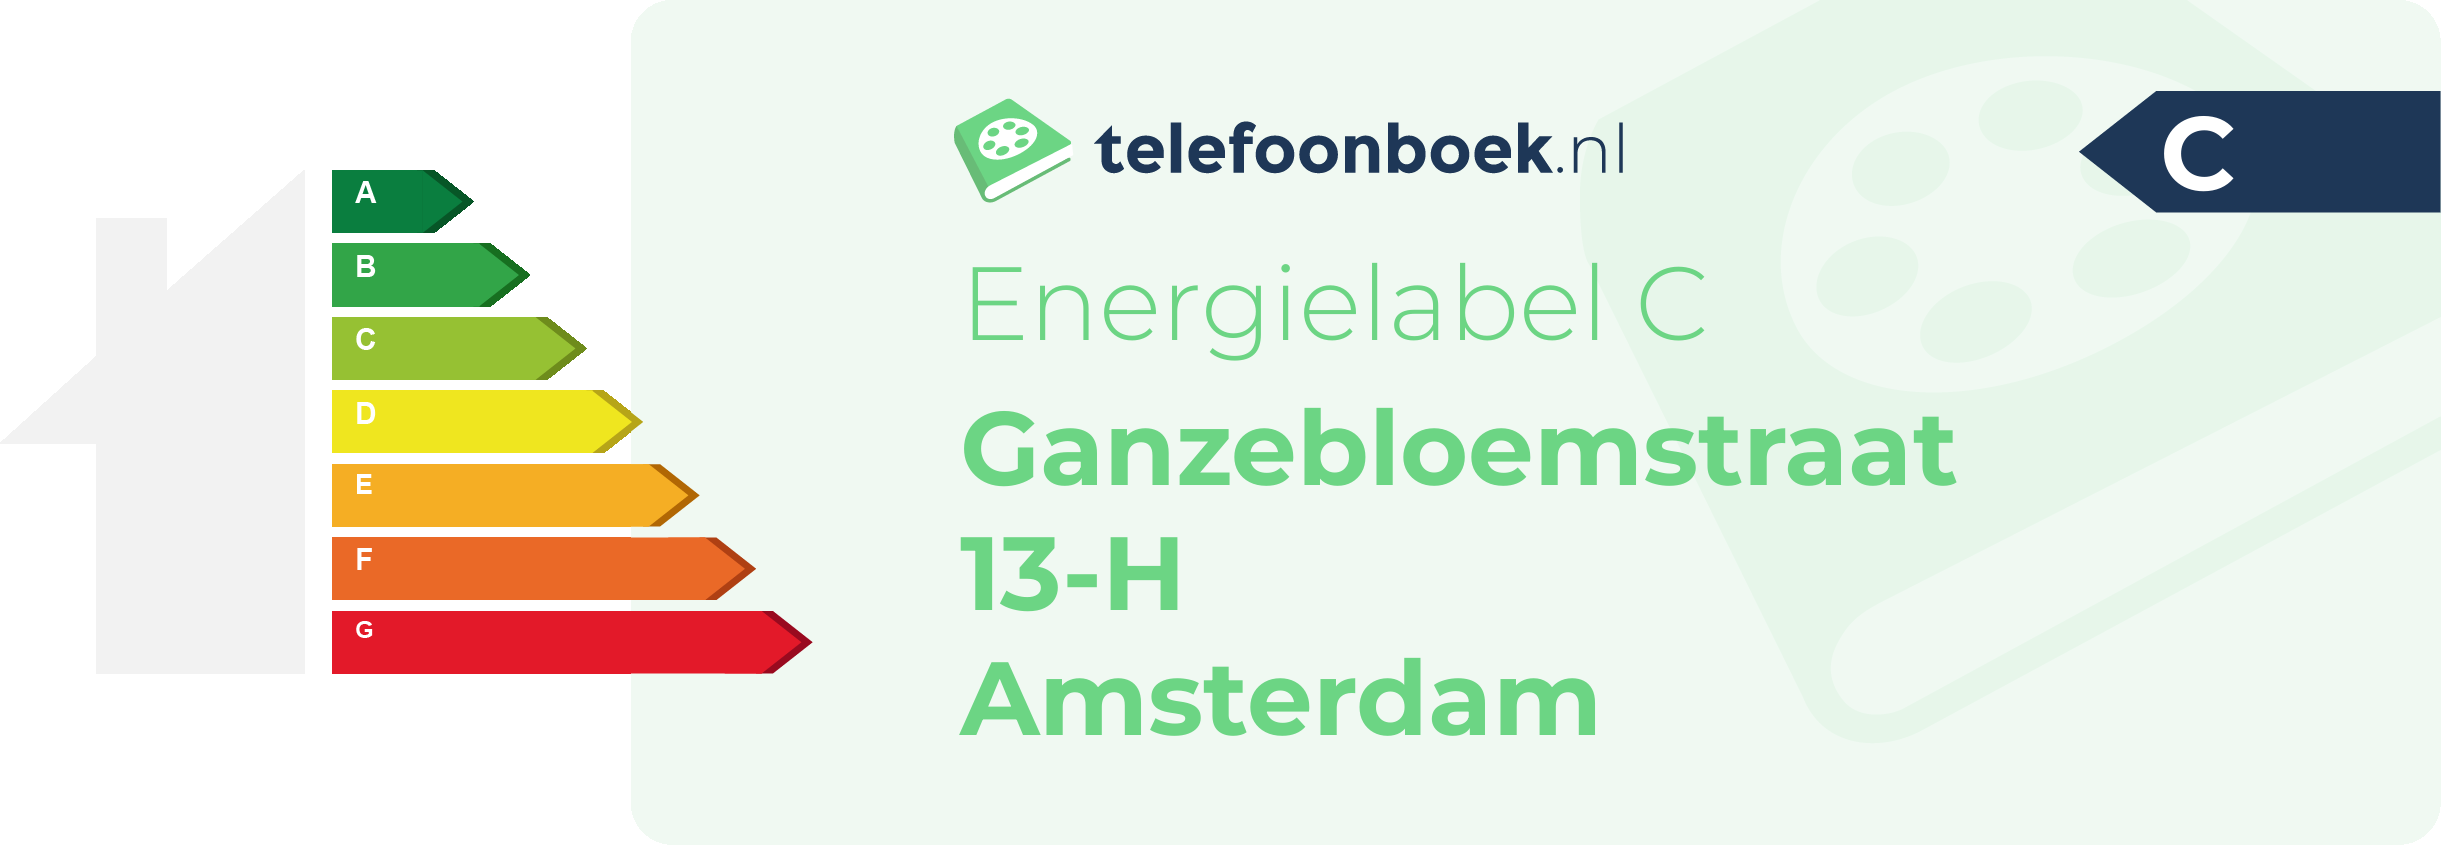 Energielabel Ganzebloemstraat 13-H Amsterdam